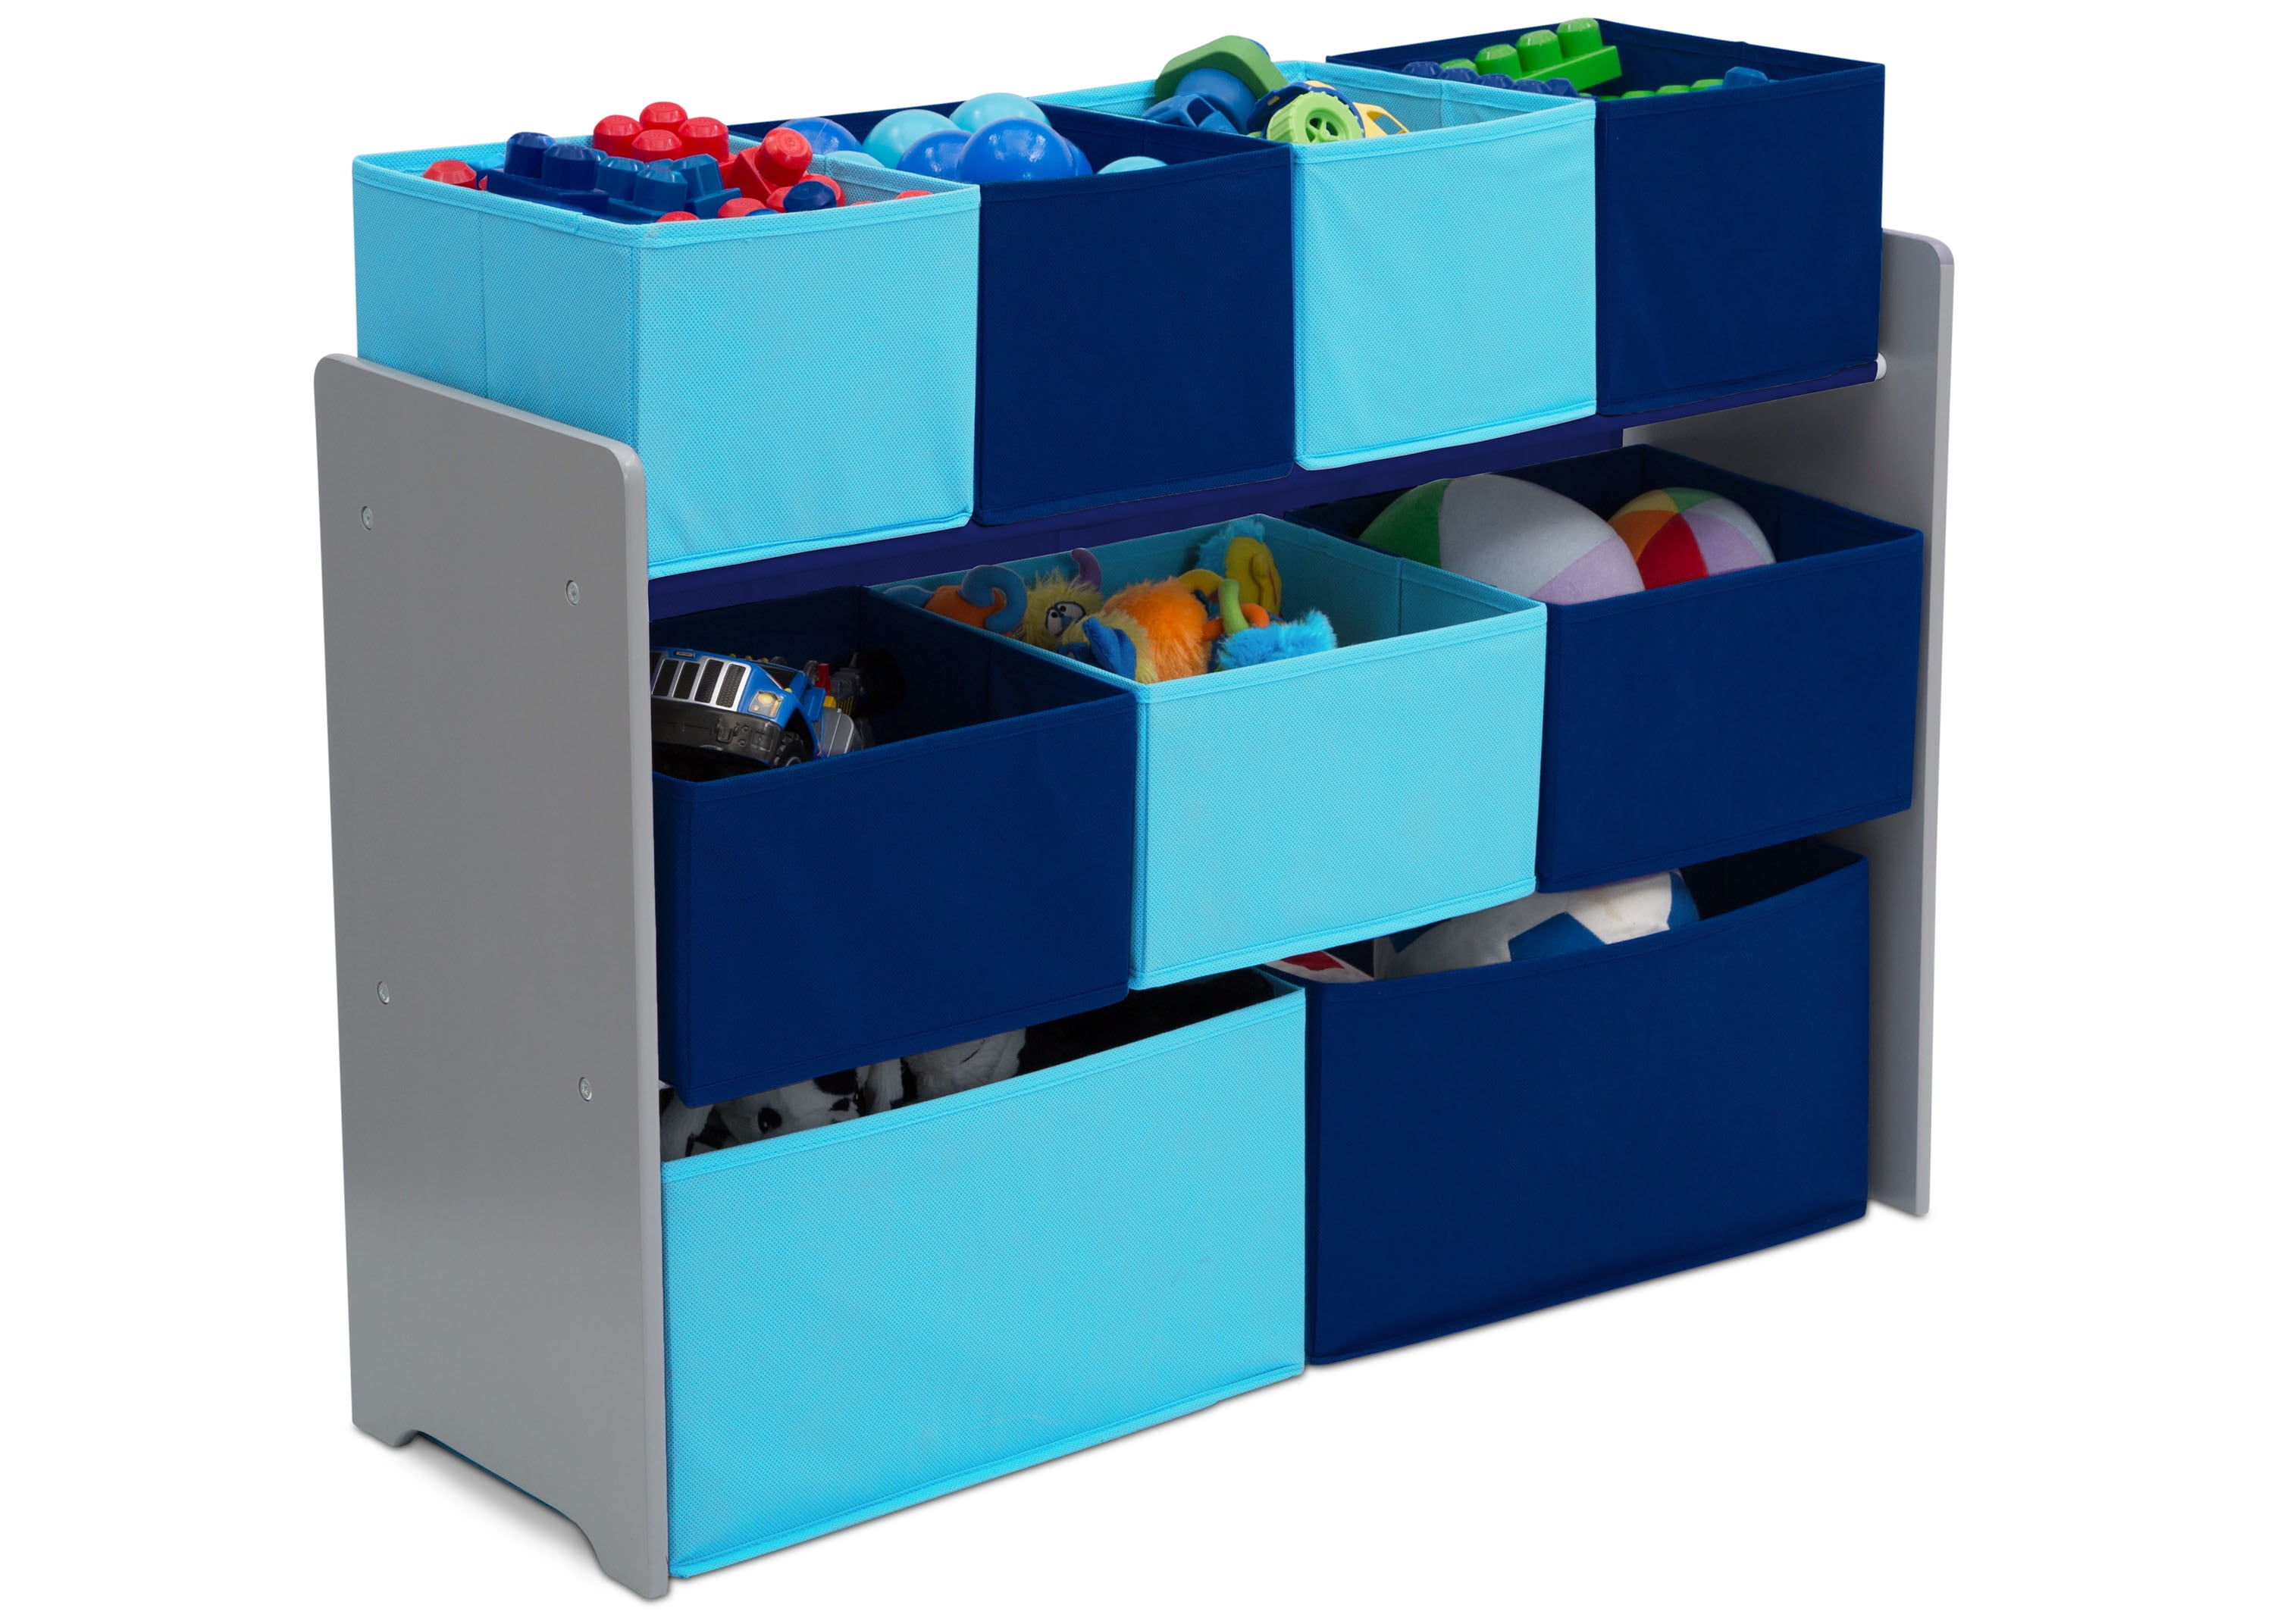 White/Pink Bins Details about   Children Deluxe Multi-Bin Toy Organizer with Storage Bins 